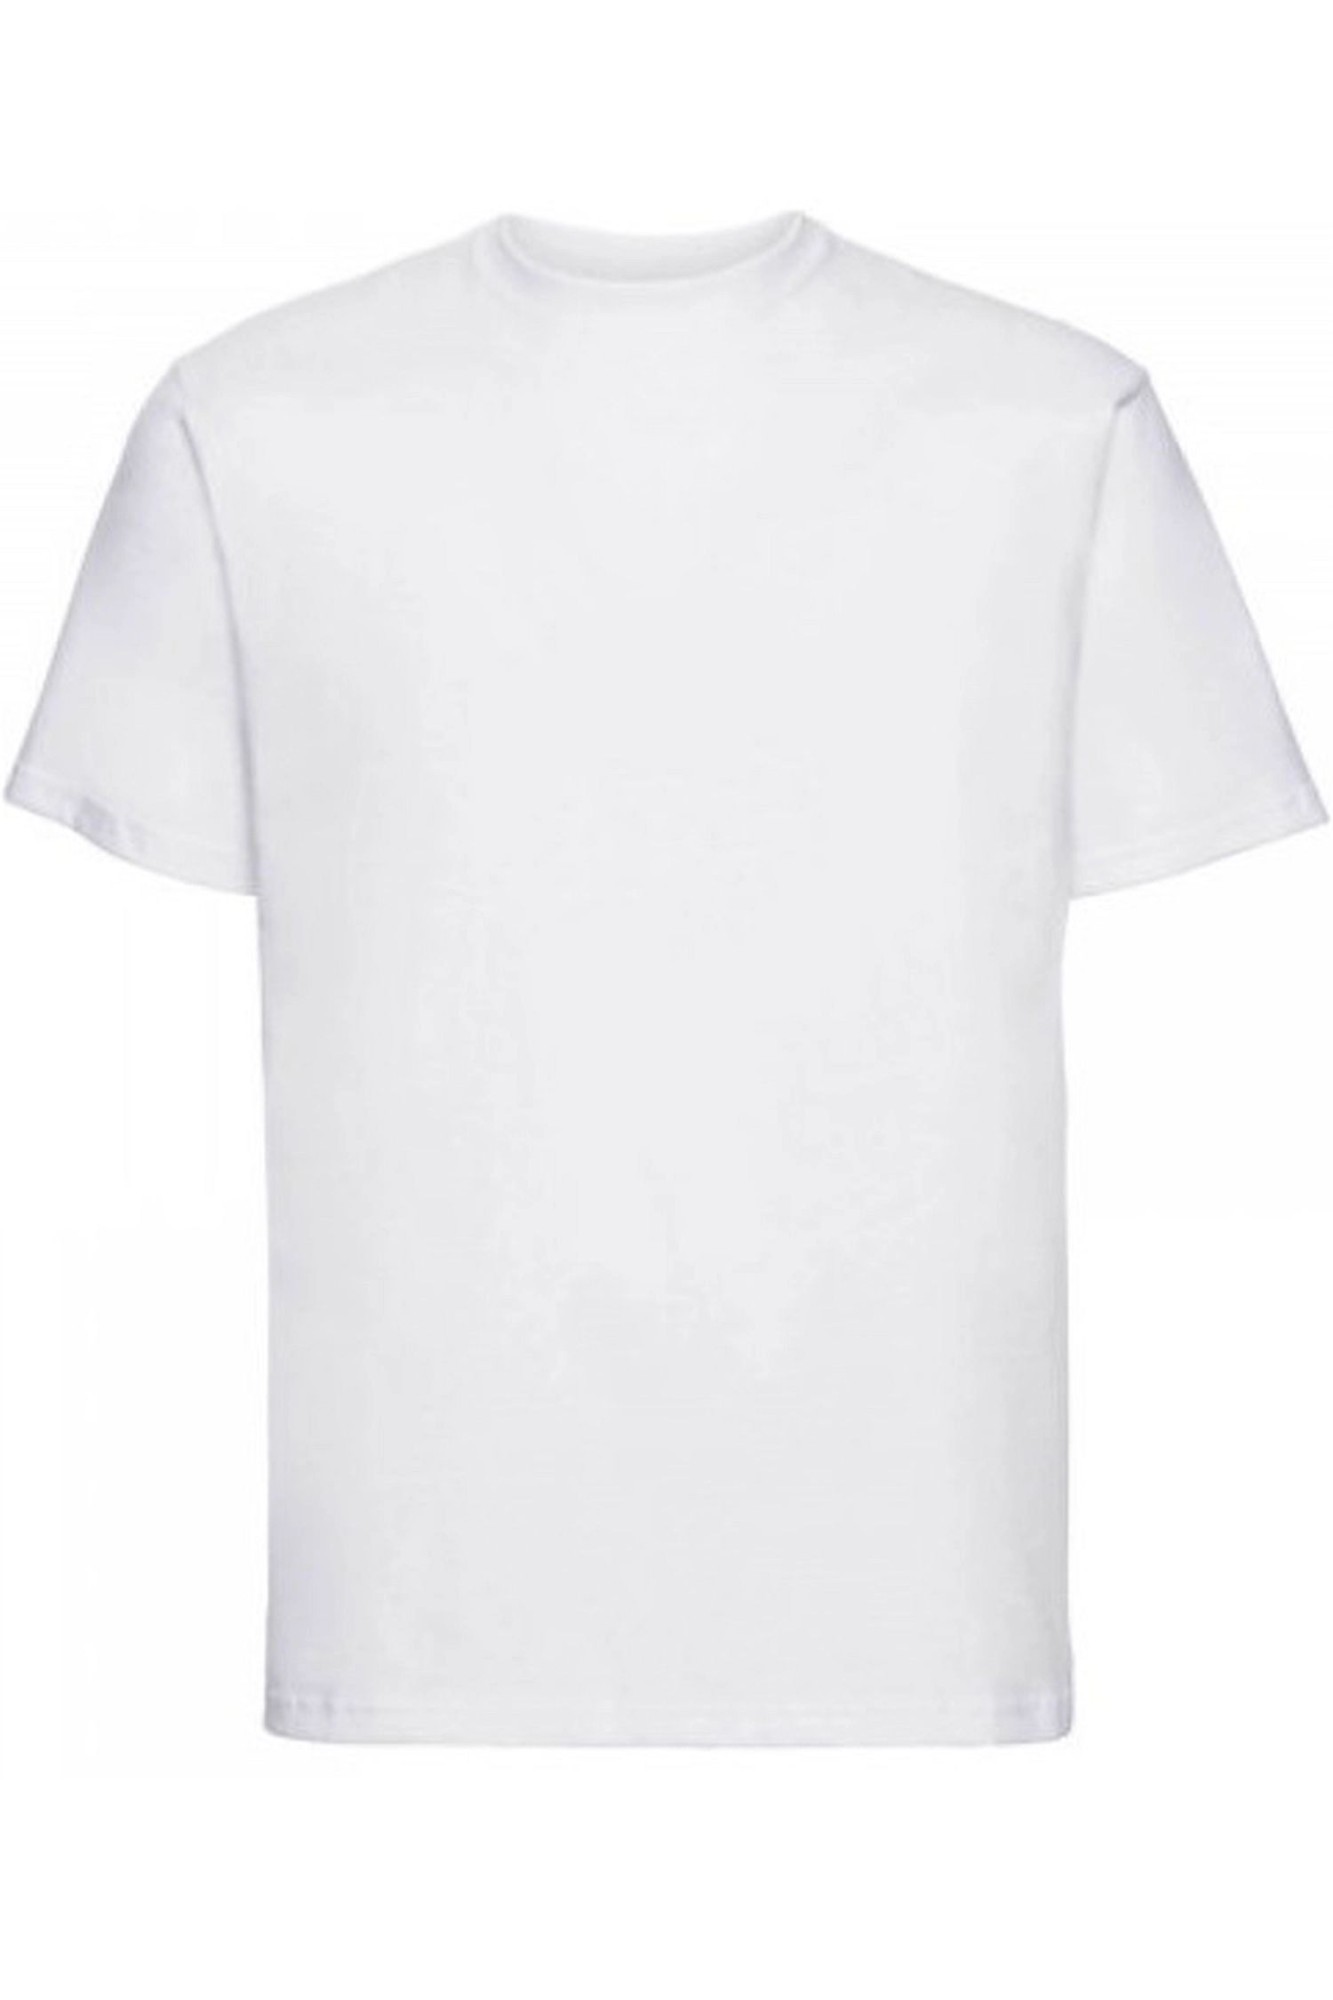 Pánské tričko 002 white - NOVITI Bílá XXL